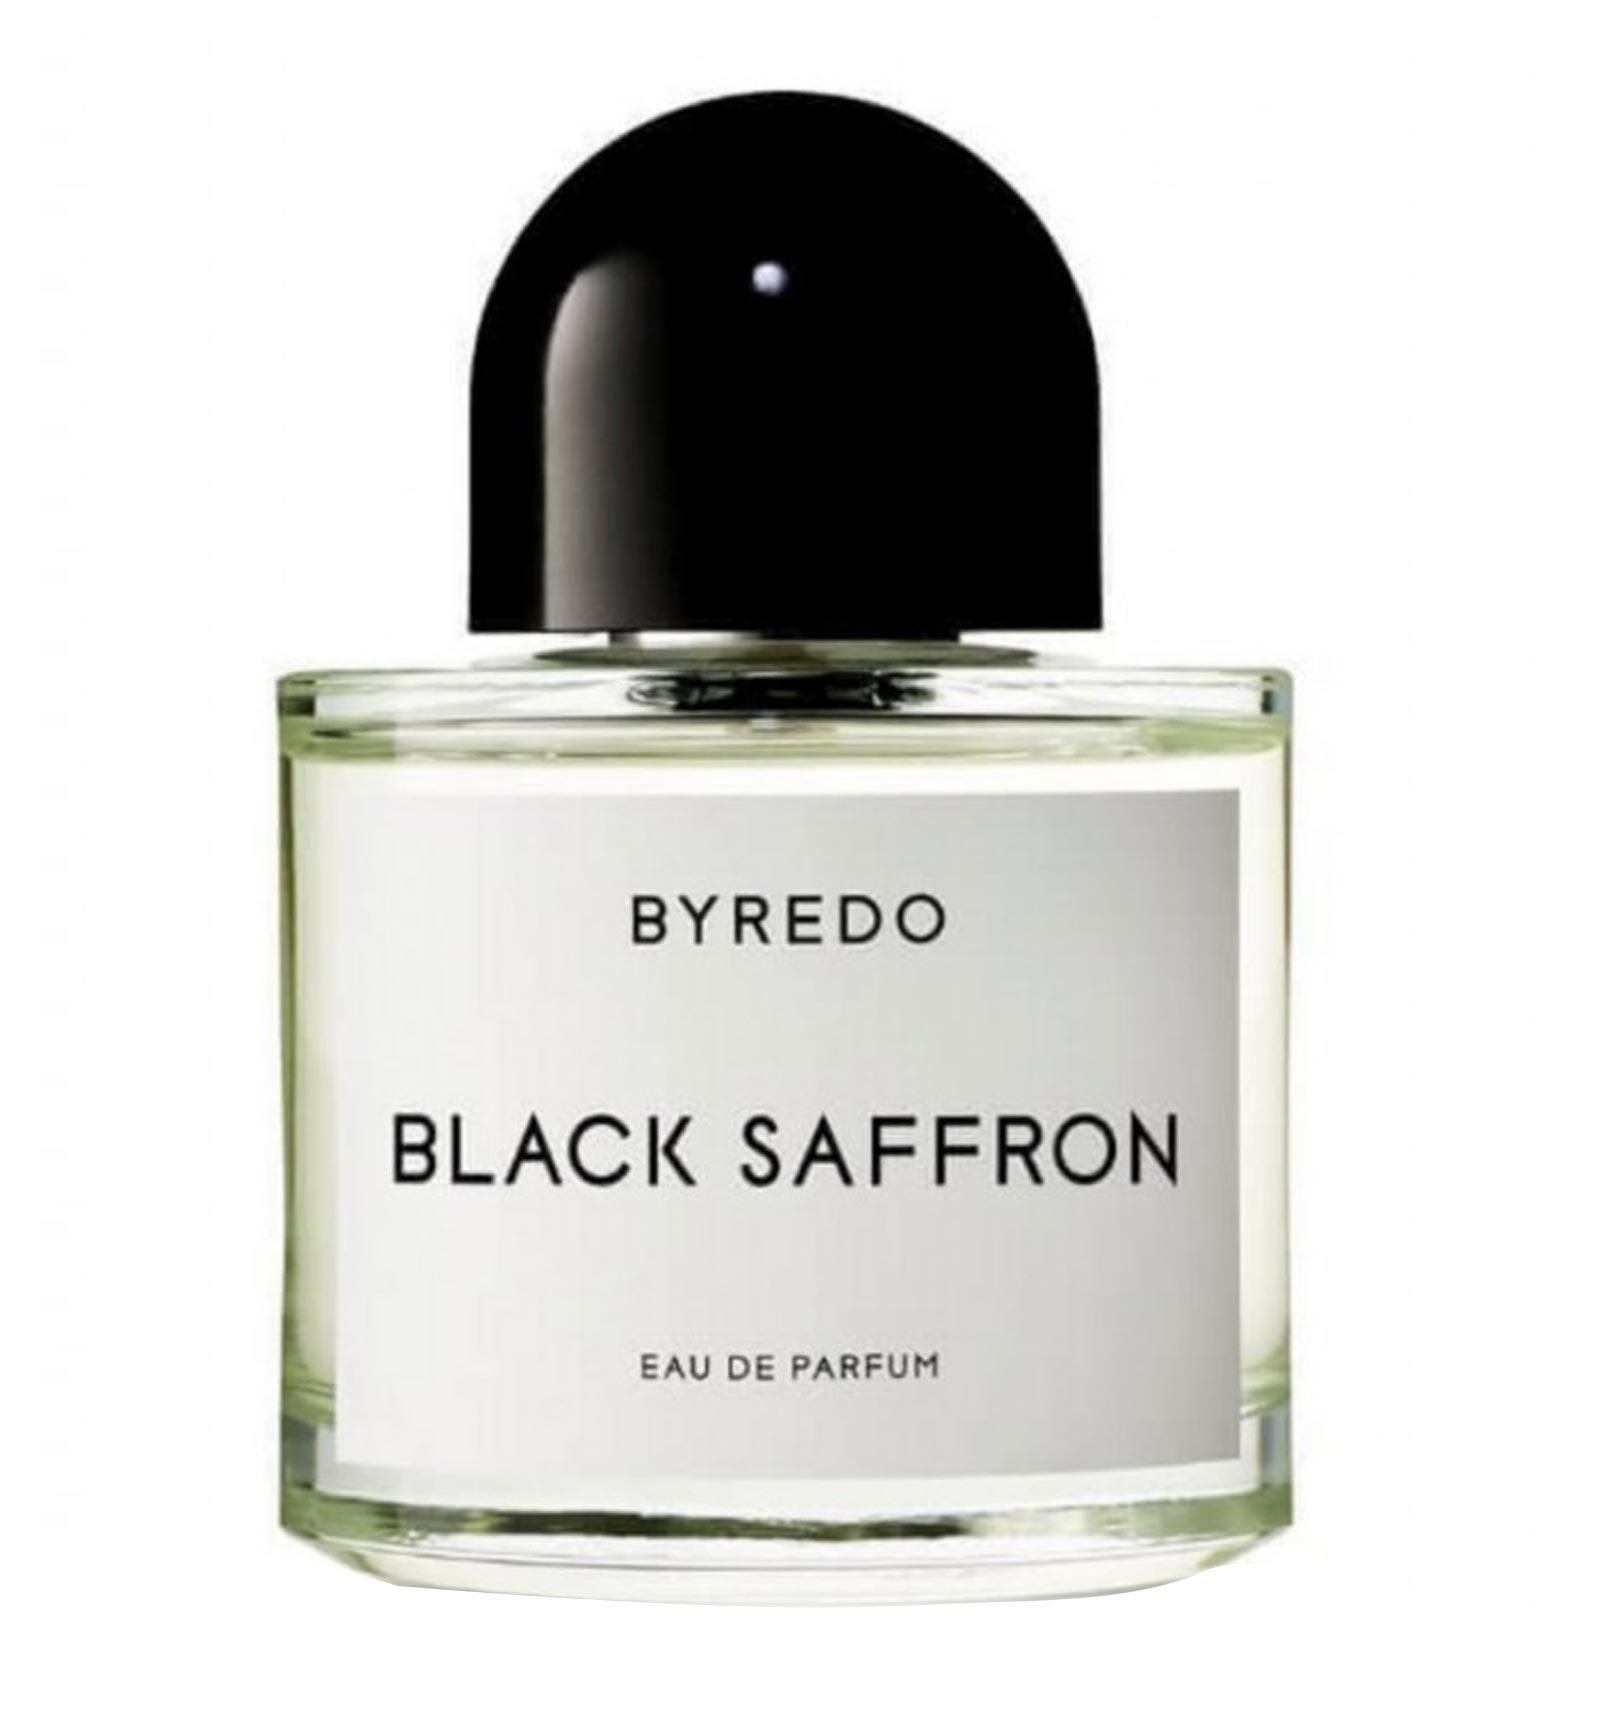 Byredo Black Saffron Eau de Parfum